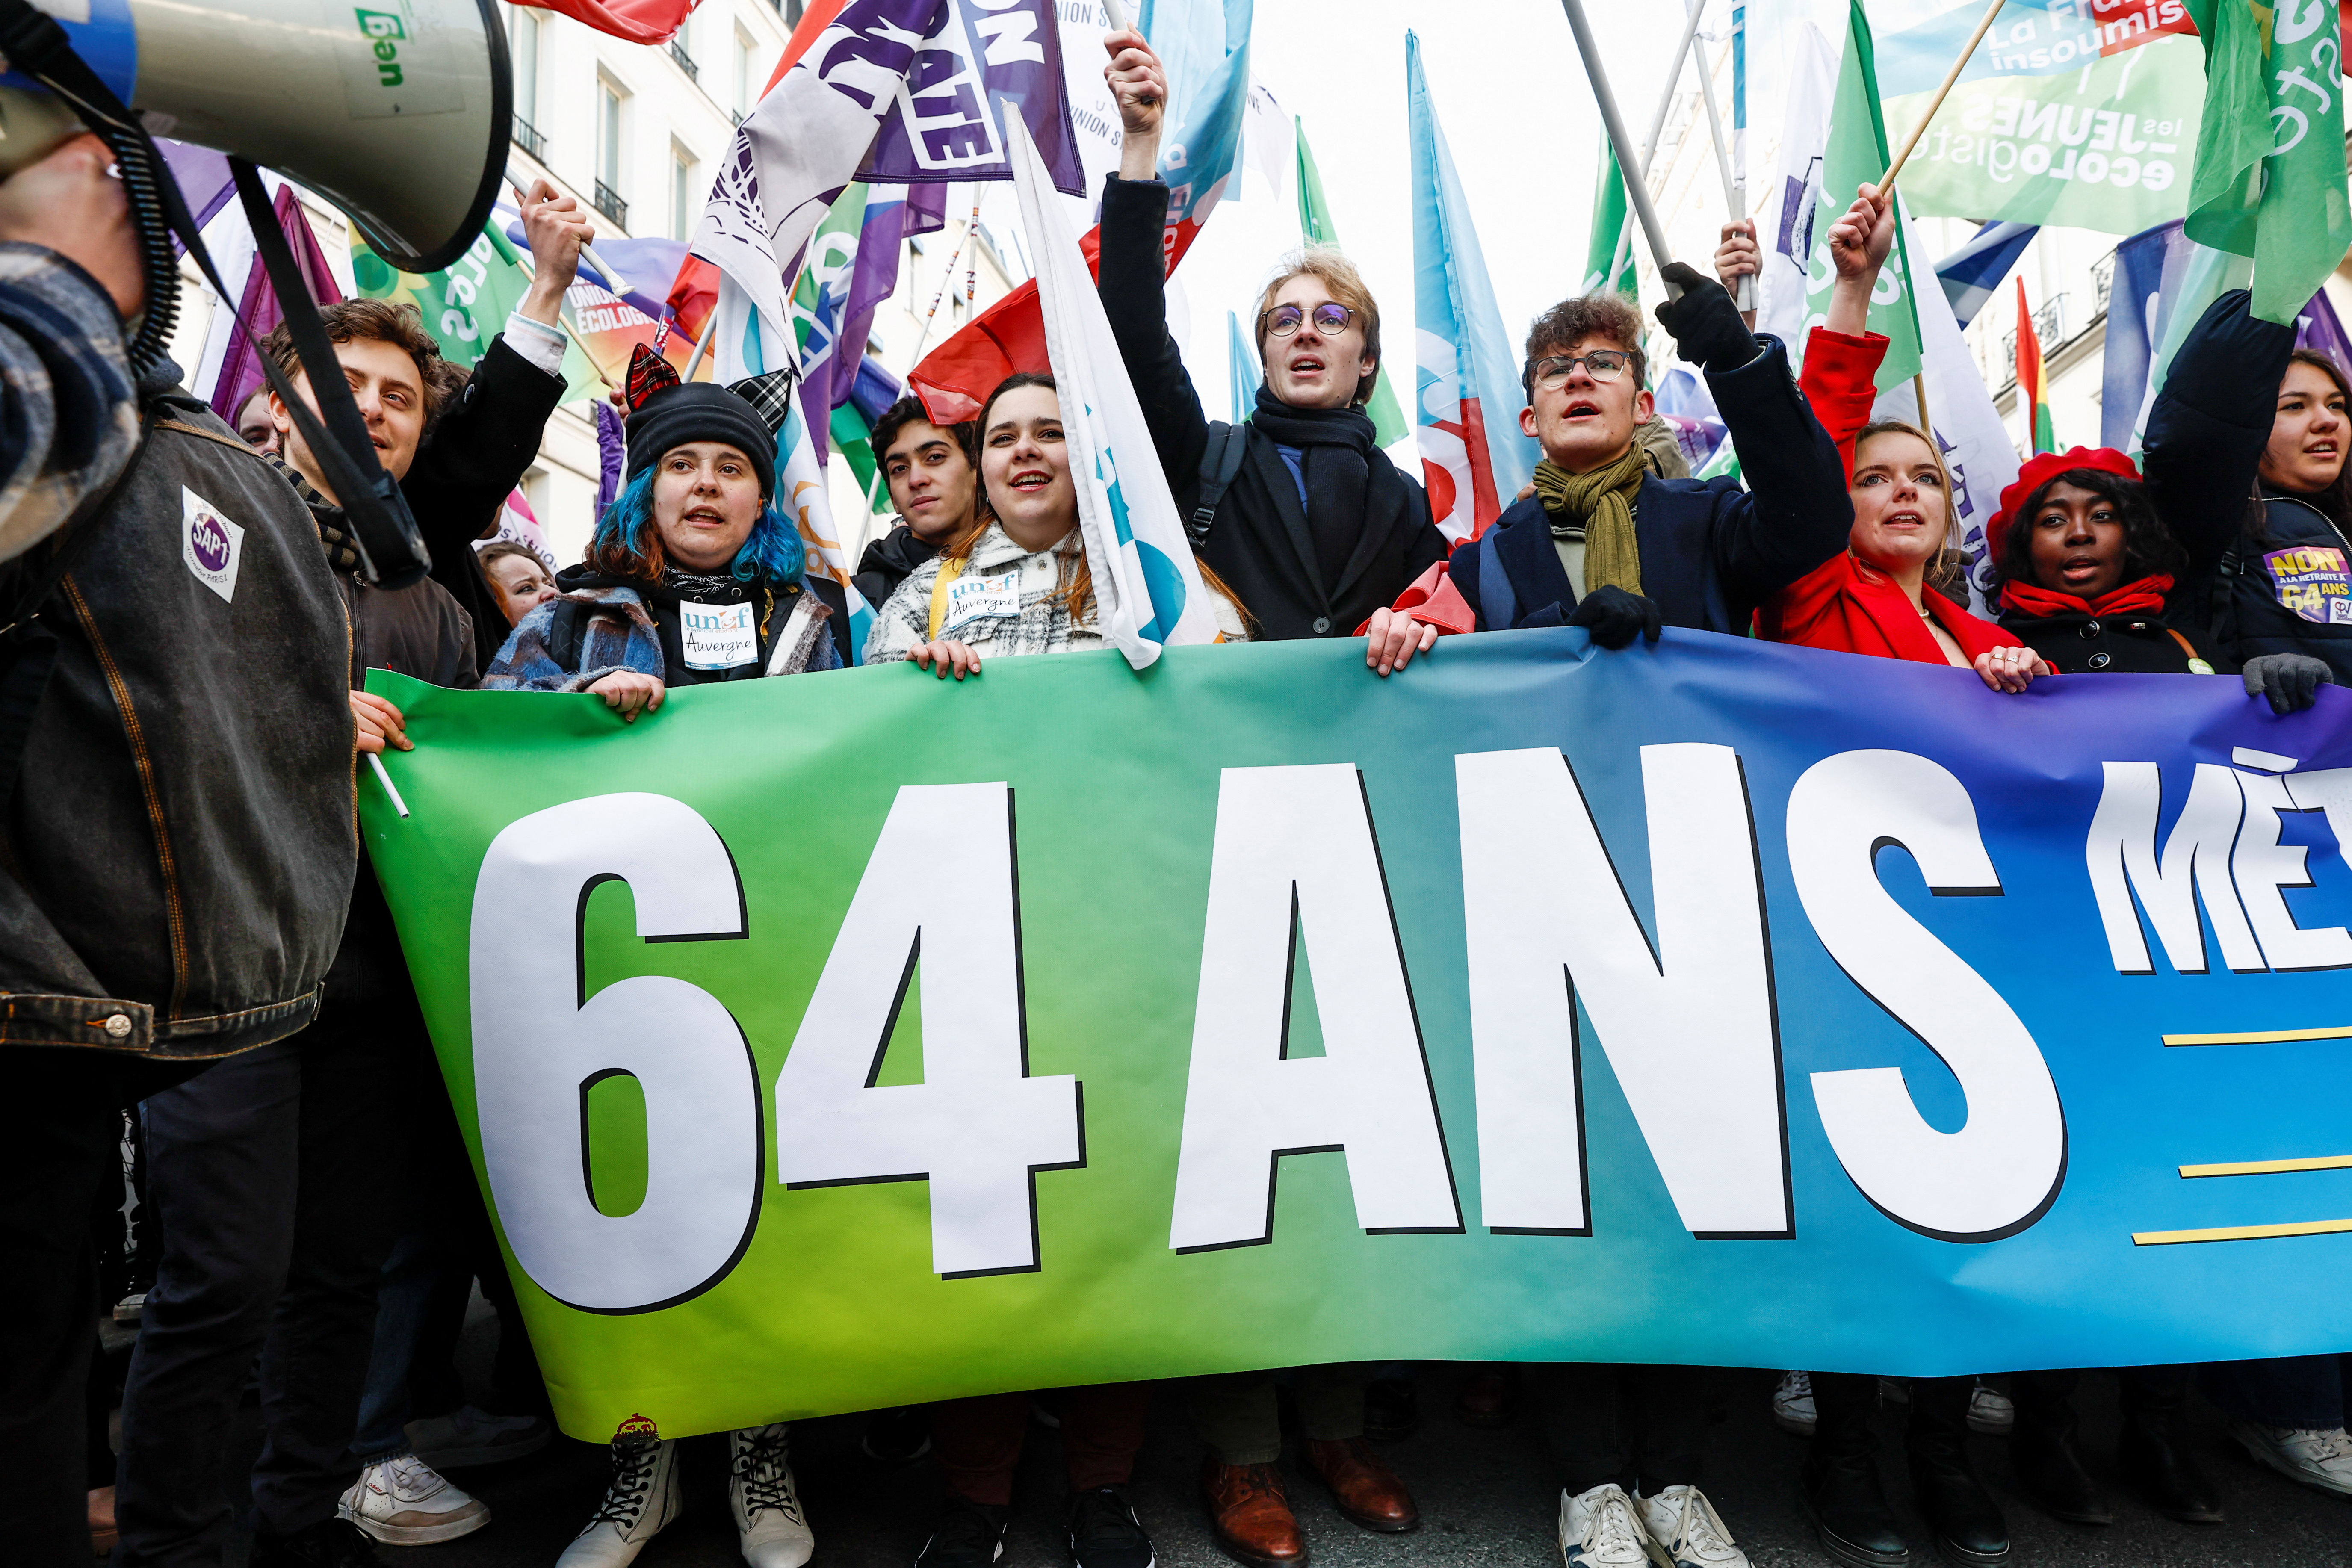 Jóvenes cargan una pancarta que dice "No al retiro a los 64 años" durante una protesta en París (Reuters)